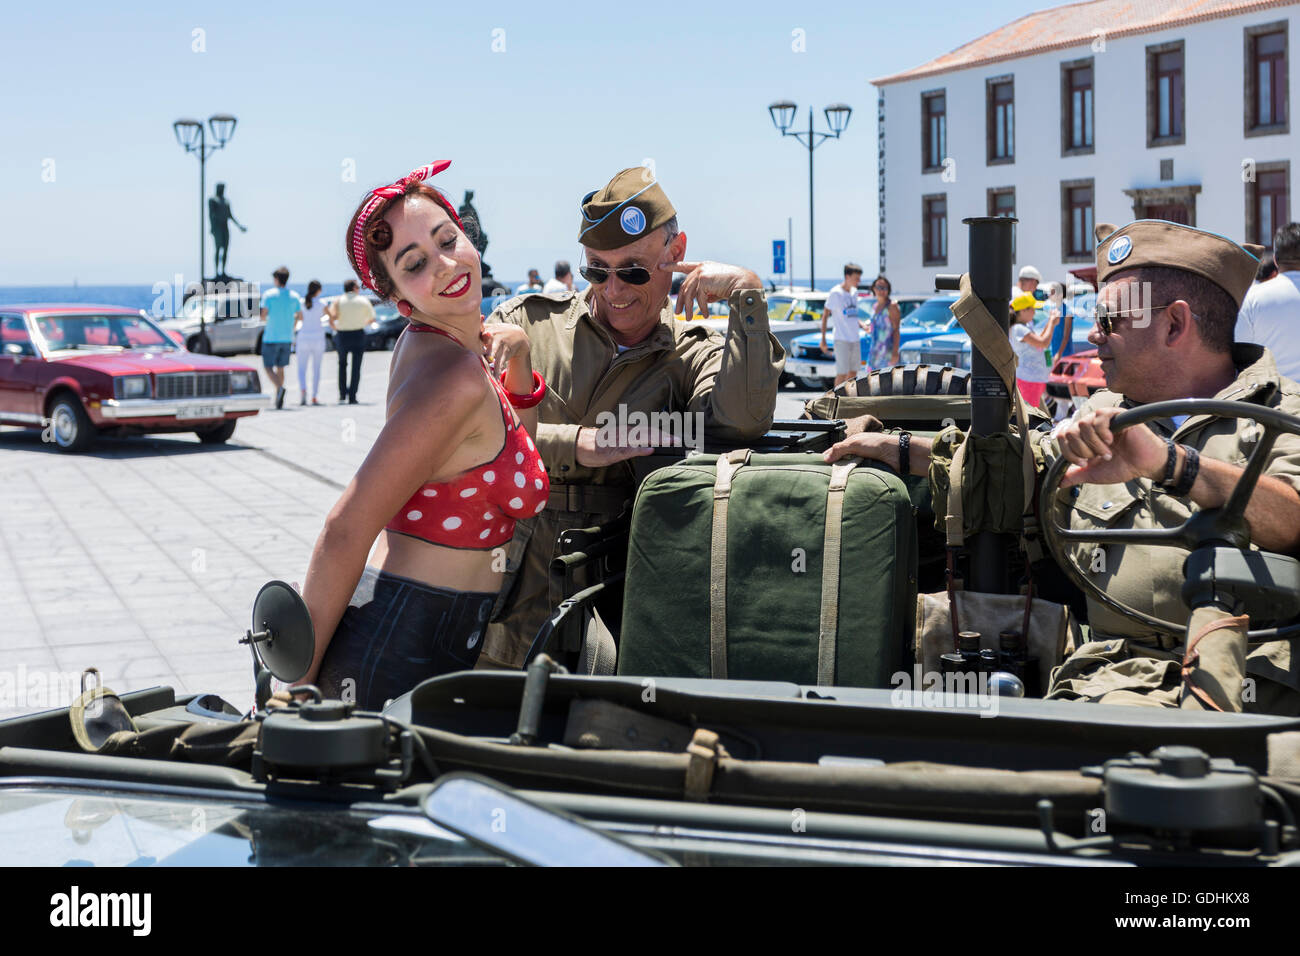 Körper gemalt Pin up Mädchen fotografiert mit Spielern in US Armee Gang bei amerikanischen Autos und Motorräder, die Versammlung in der Plaza de La Basilica de Candelaria, Teneriffa. Zusammen mit Fans von Autos und Fahrräder und Mädchen verkleidet als 50er Jahre pin-Ups. Stockfoto